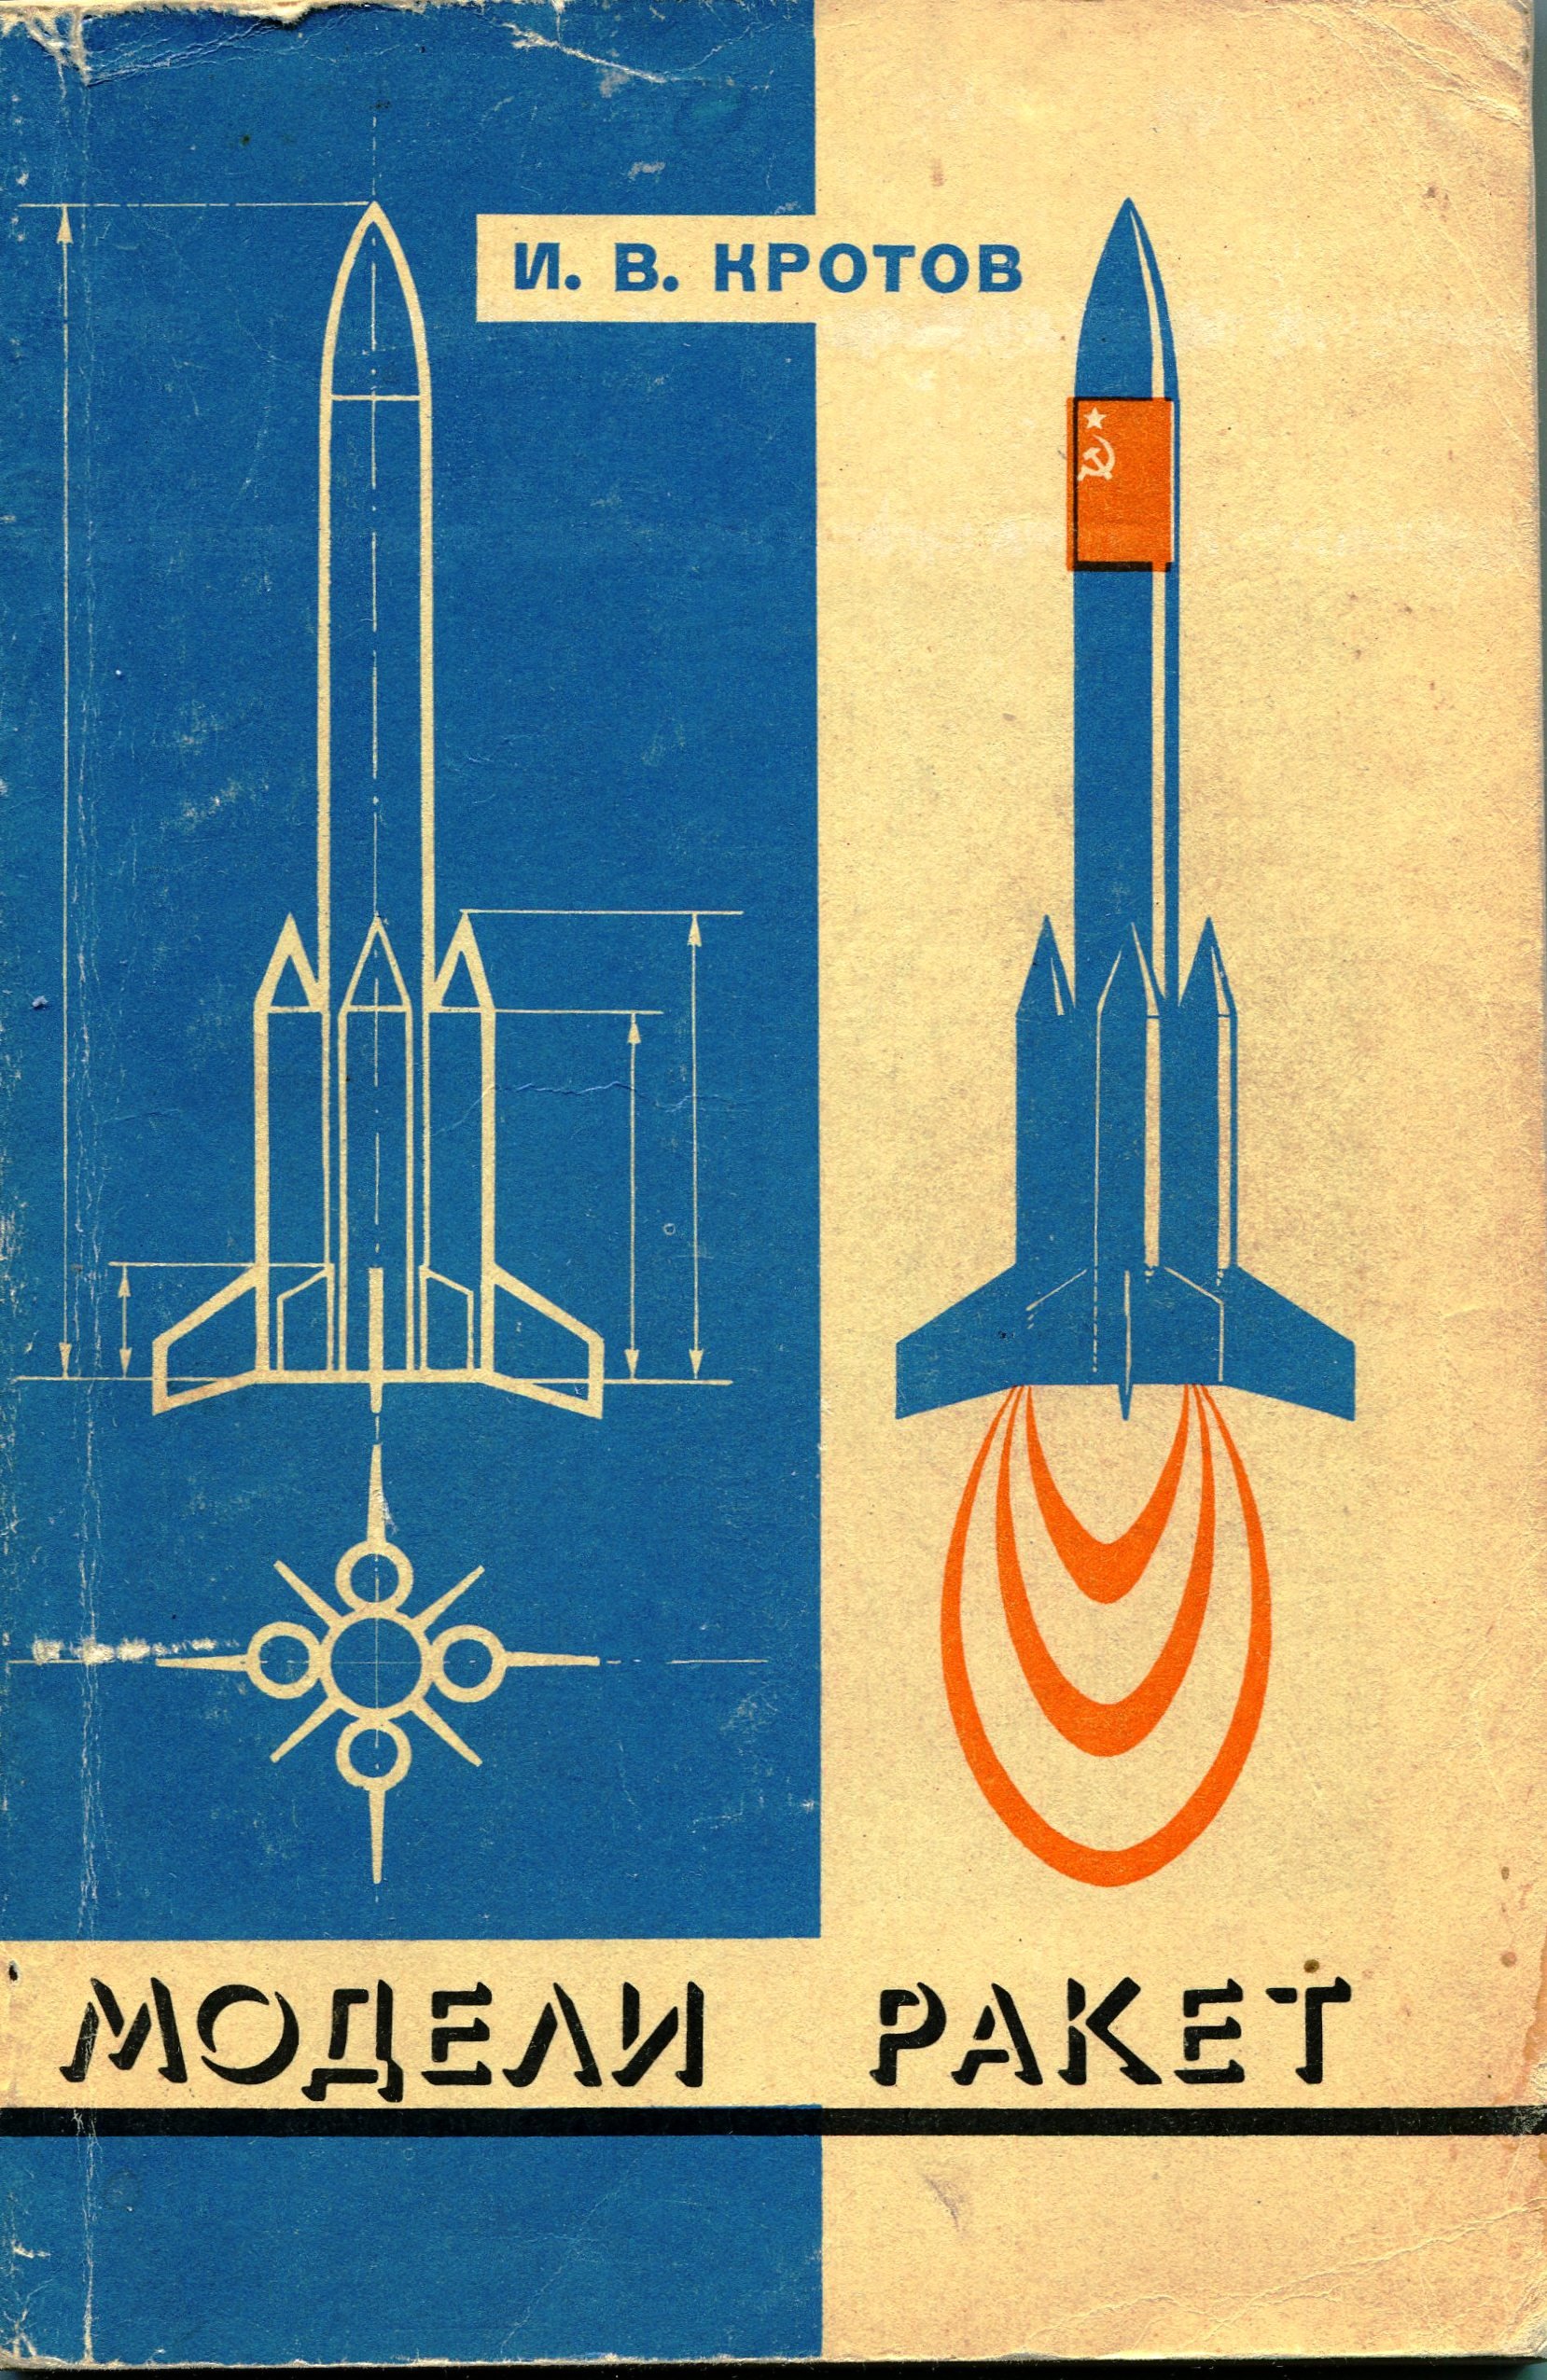 Книга Кротов И.В. "Модели ракет. Проектирование". 1979 (Державний політехнічний музей імені Бориса Патона CC BY-NC-SA)